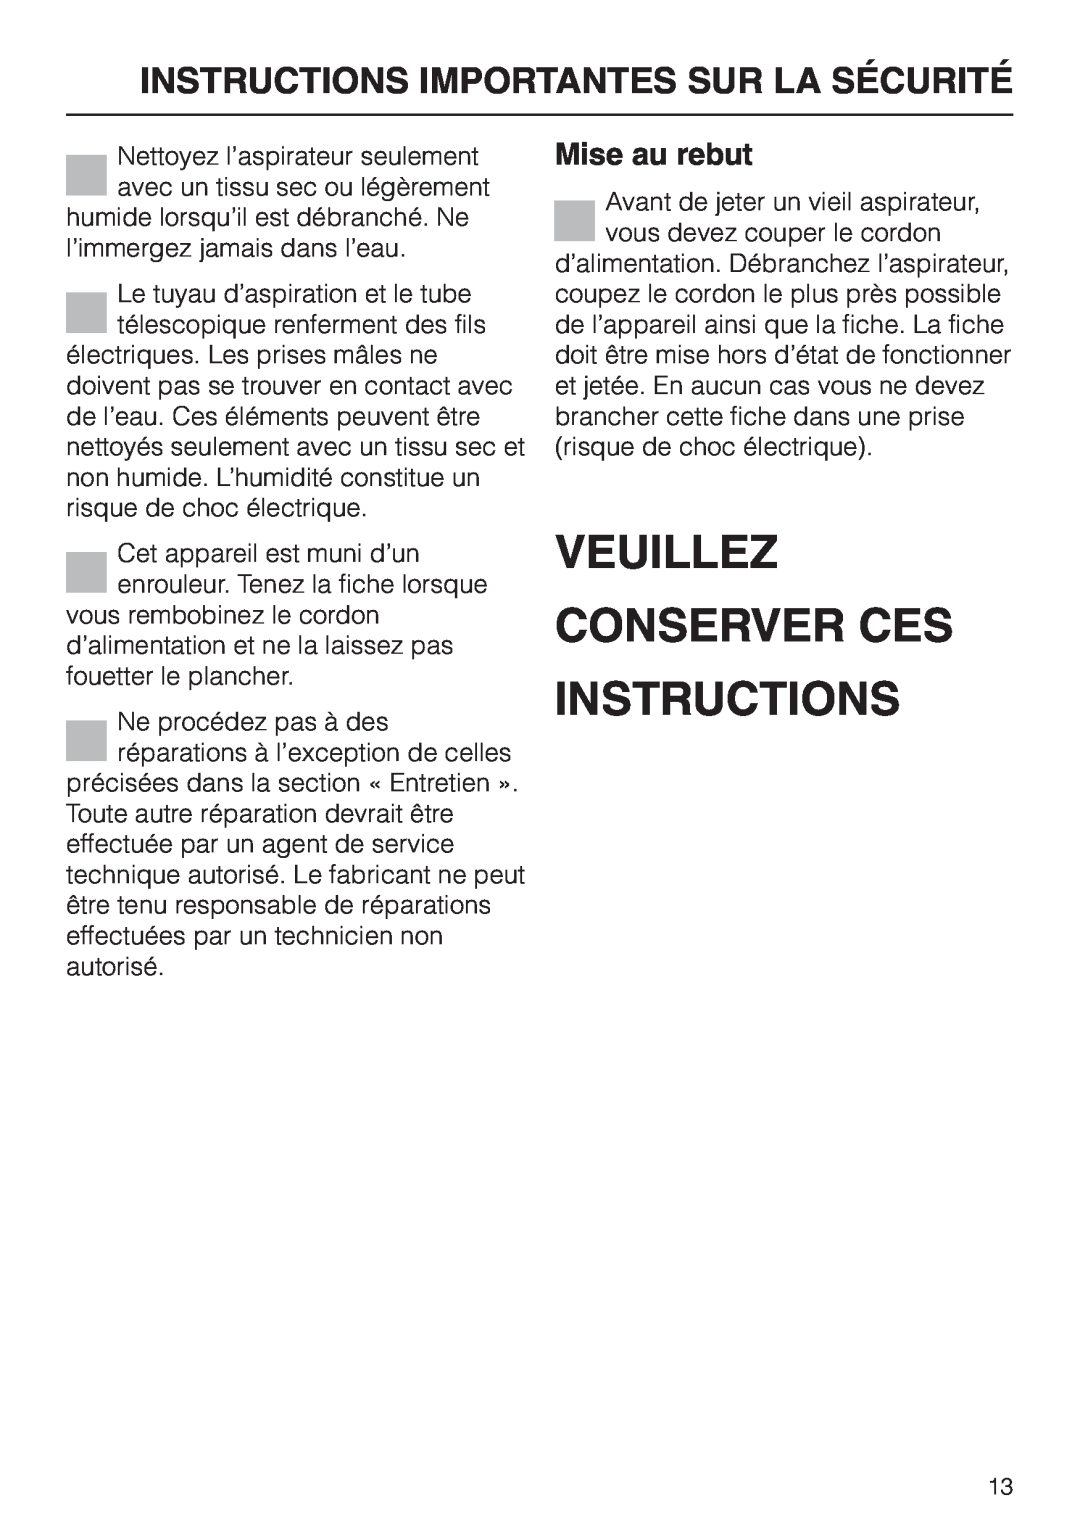 Miele S 558 manual Veuillez Conserver Ces Instructions, Mise au rebut, Instructions Importantes Sur La Sécurité 